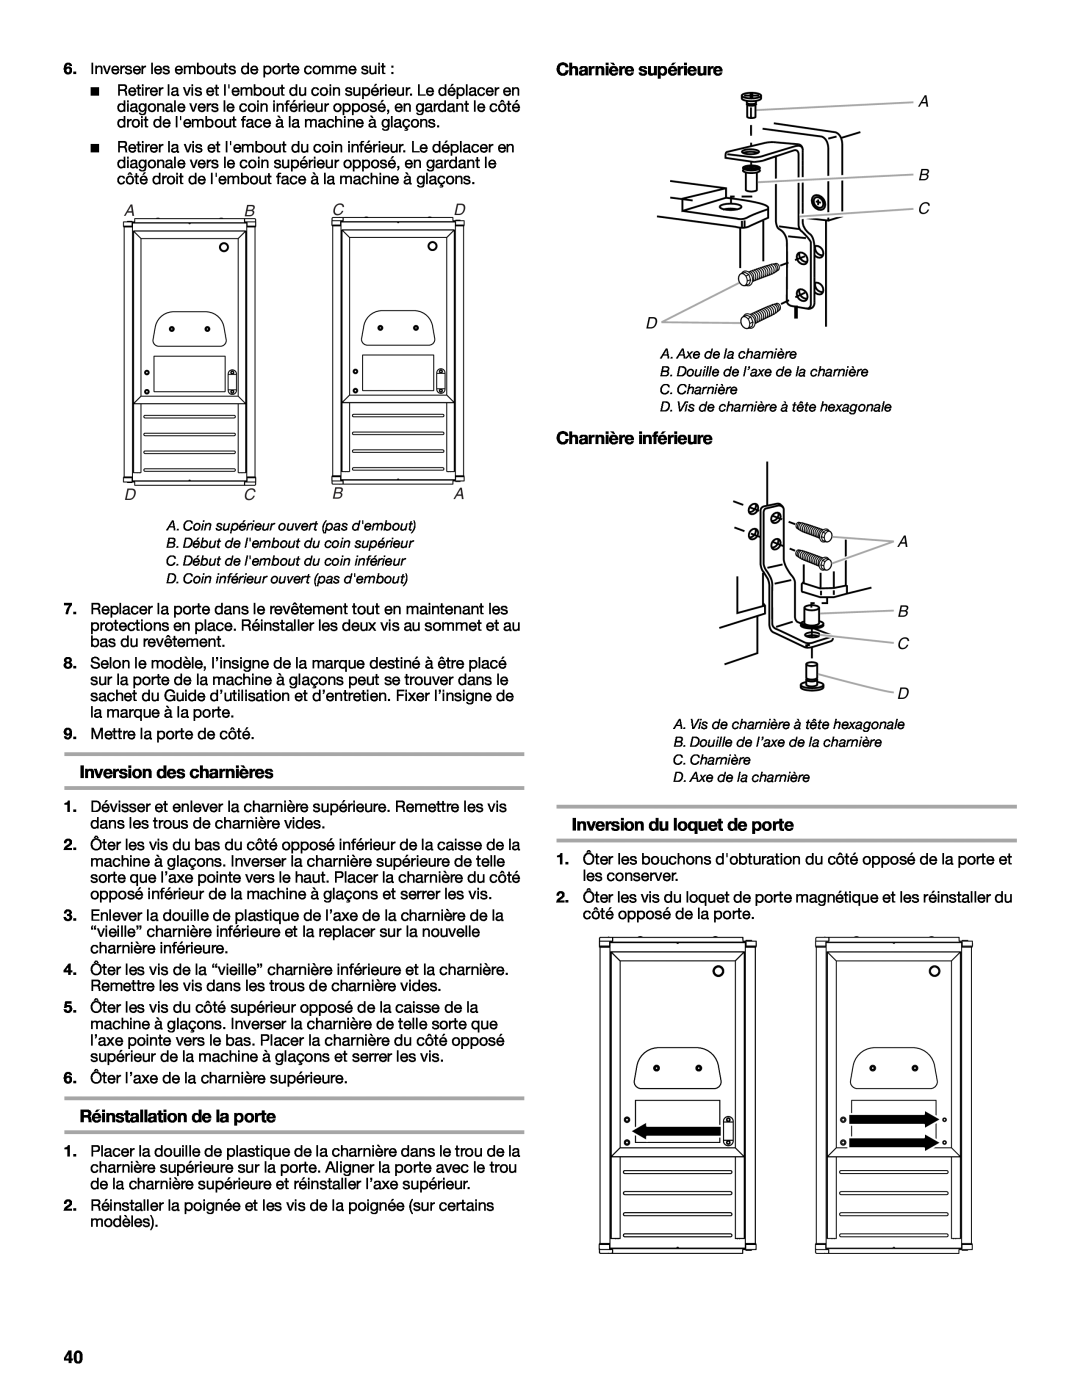 Jenn-Air W10282143B manual Inversion des charnières, Réinstallation de la porte, Charnière supérieure, Charnière inférieure 